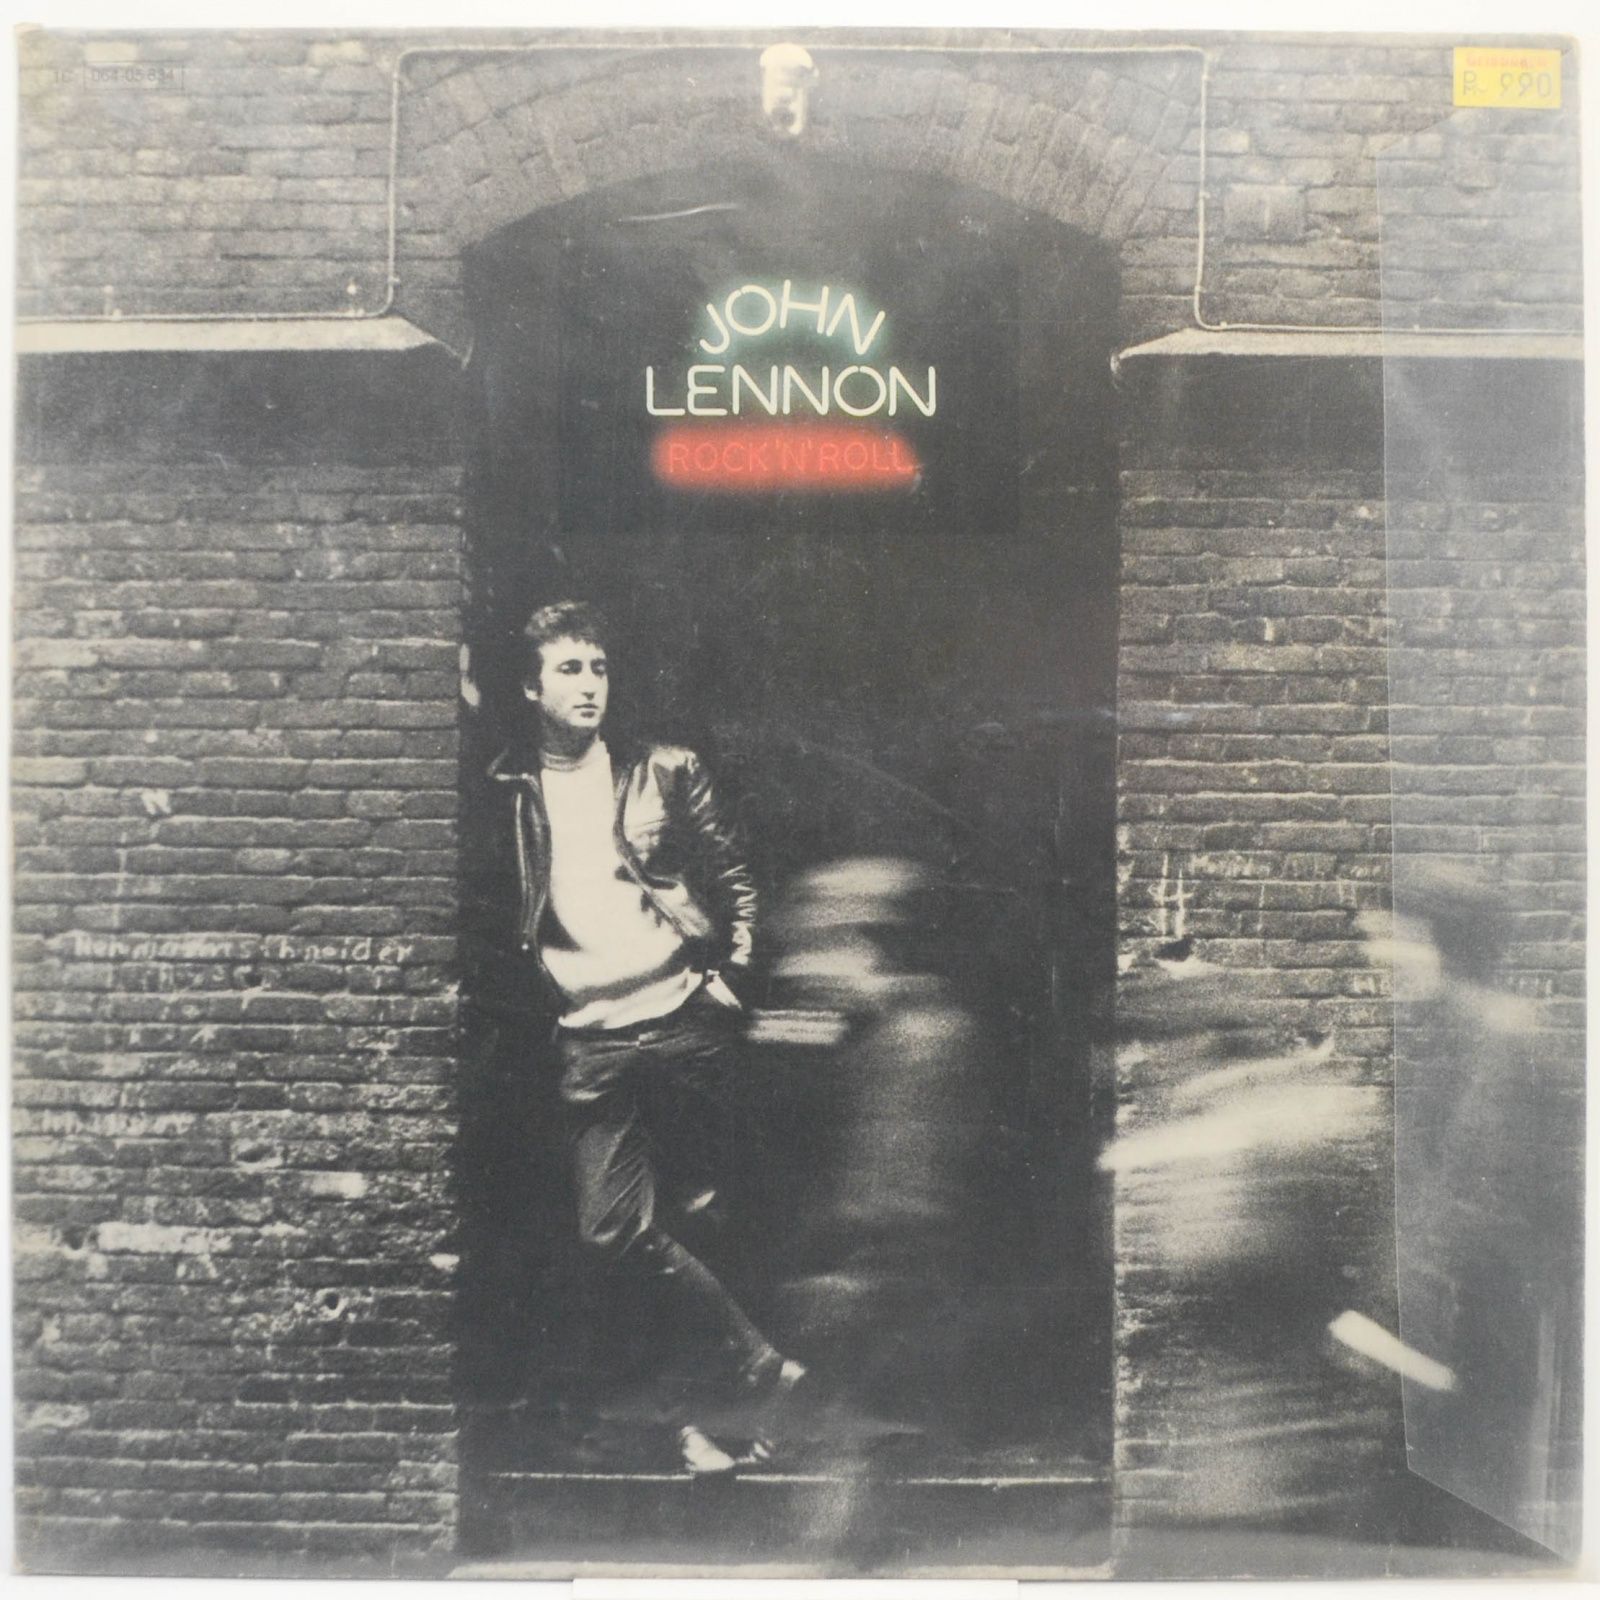 John Lennon — Rock 'N' Roll, 1975